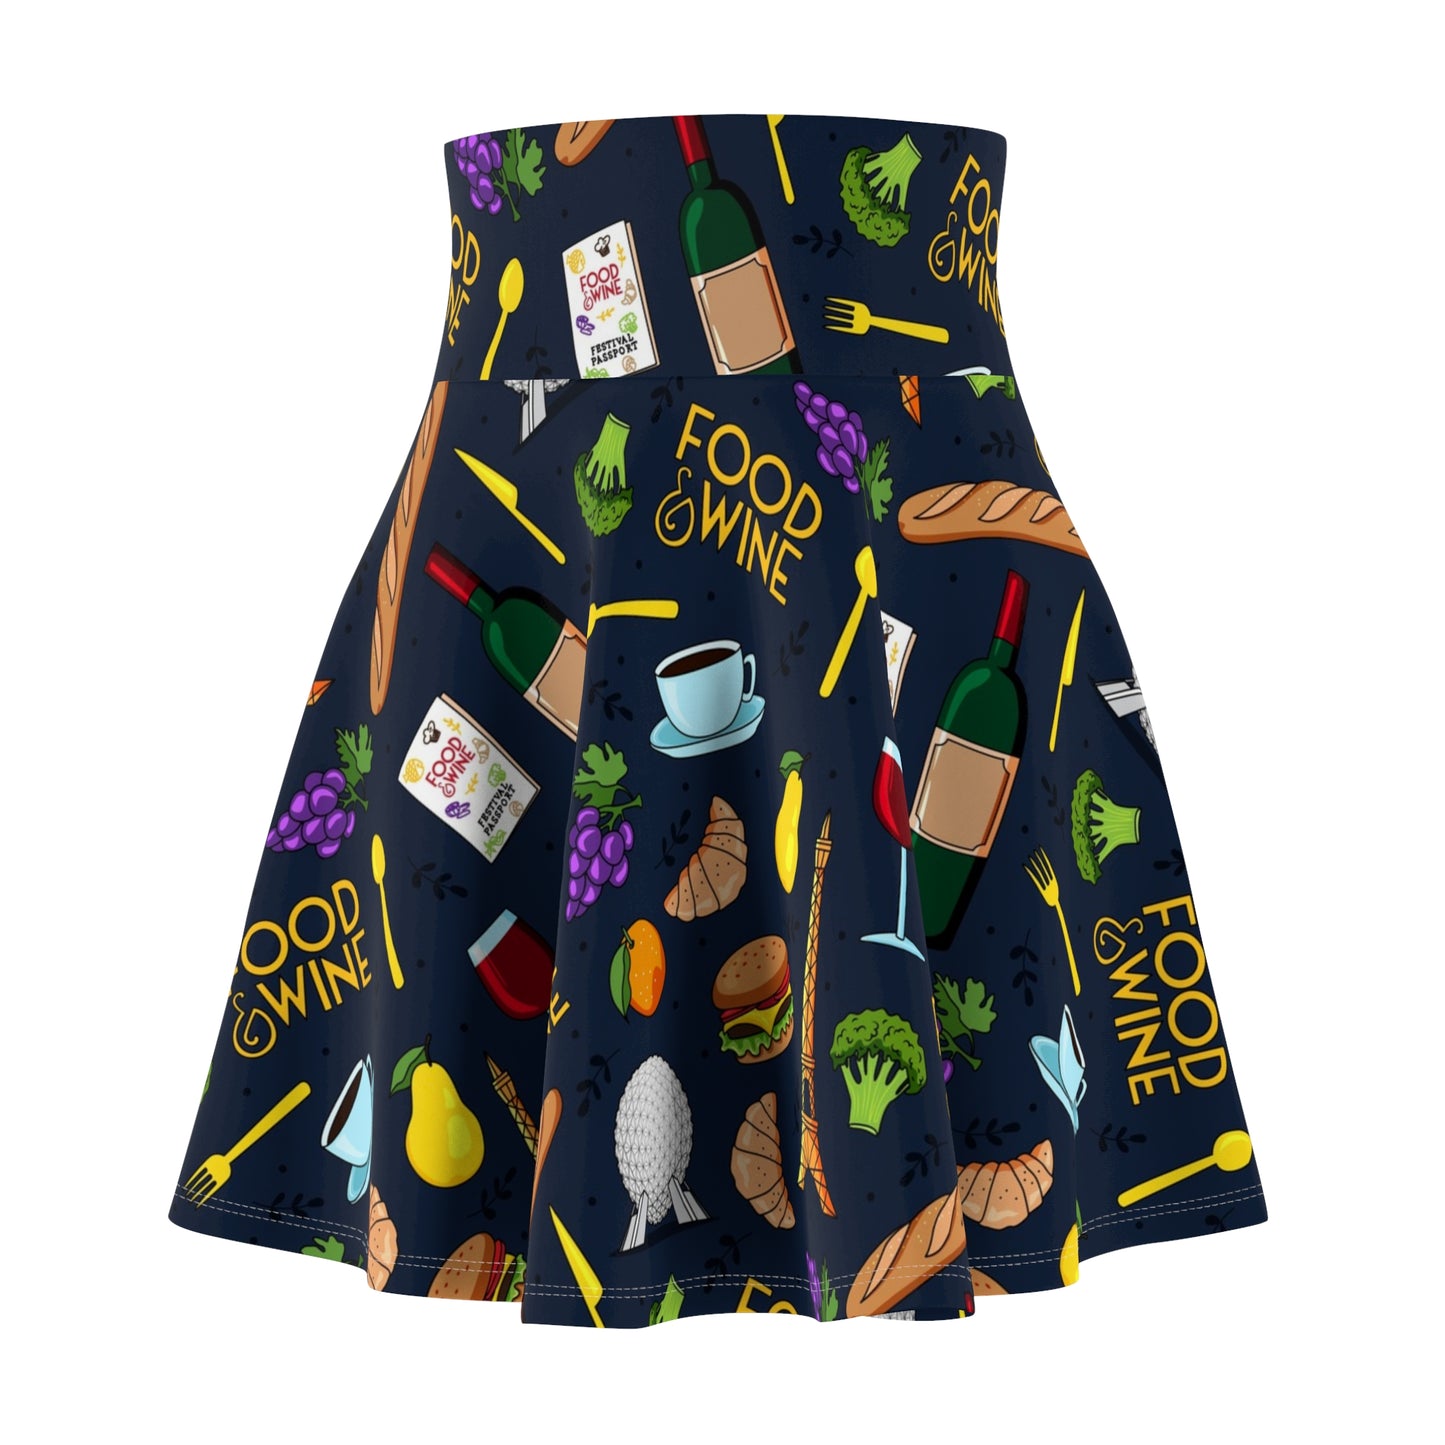 Food And Wine Women's Skater Skirt